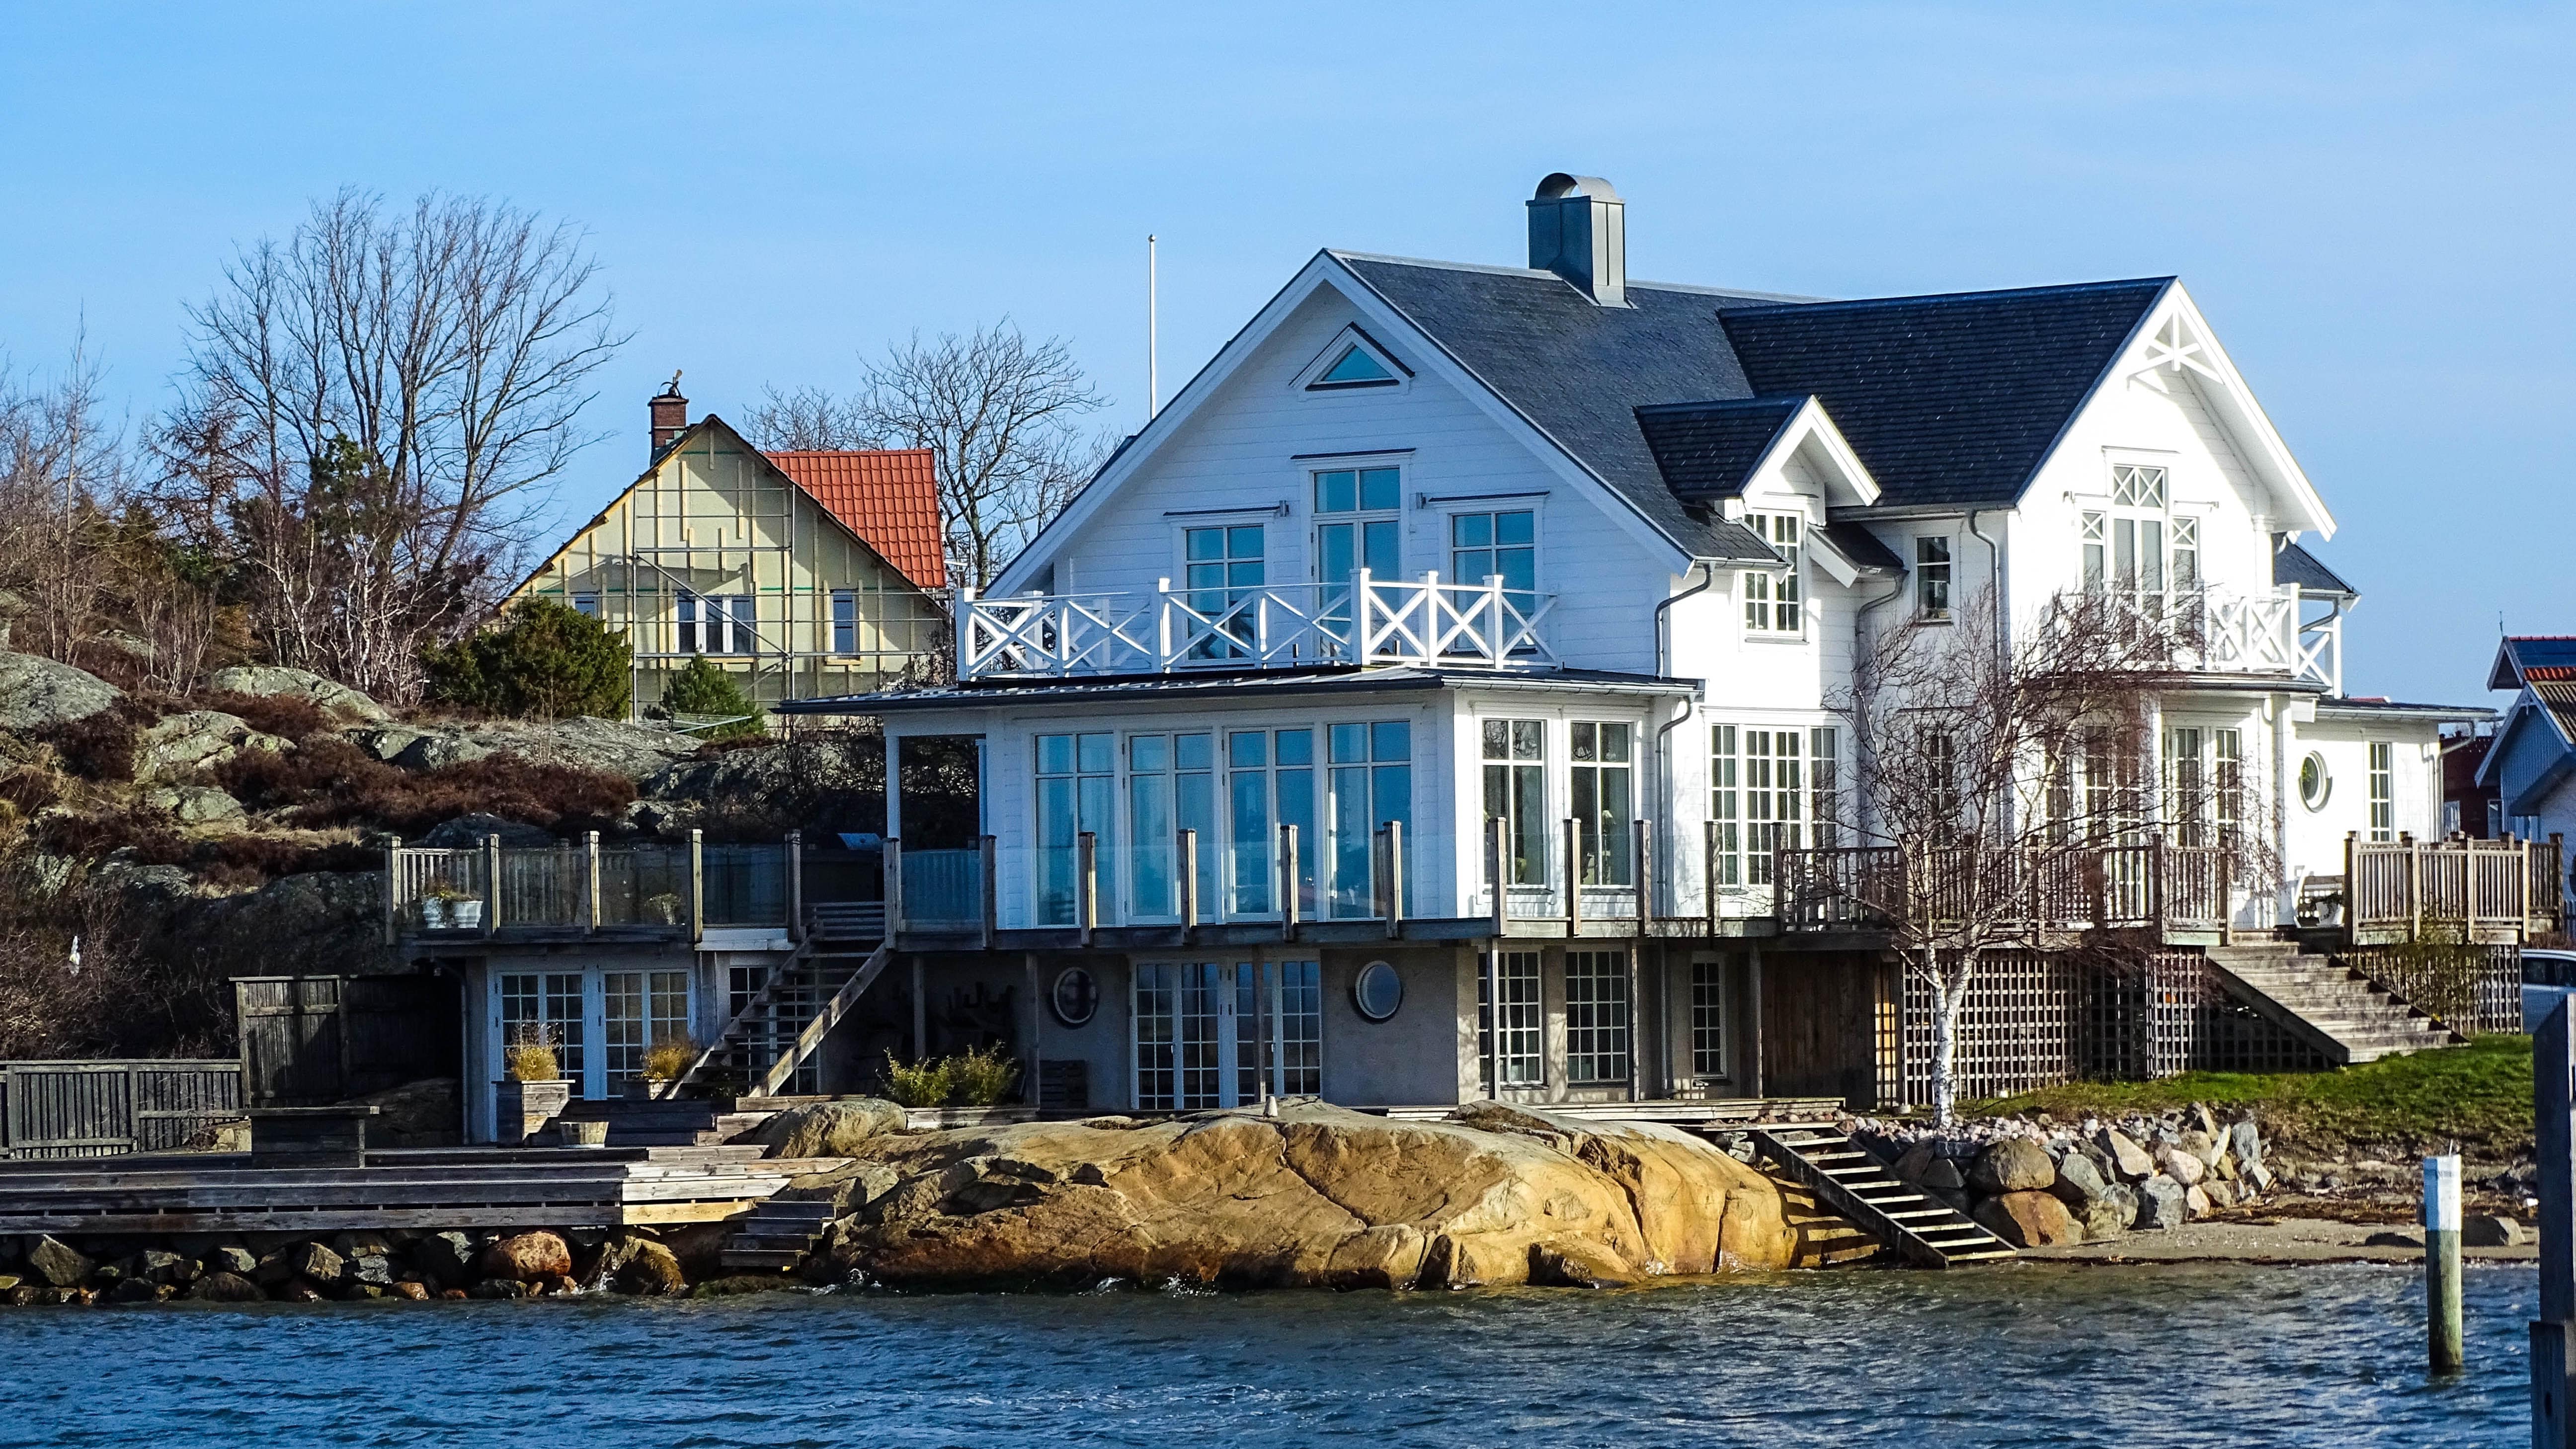 Hyr hus i Göteborg för fler alternativ på stadssemestern